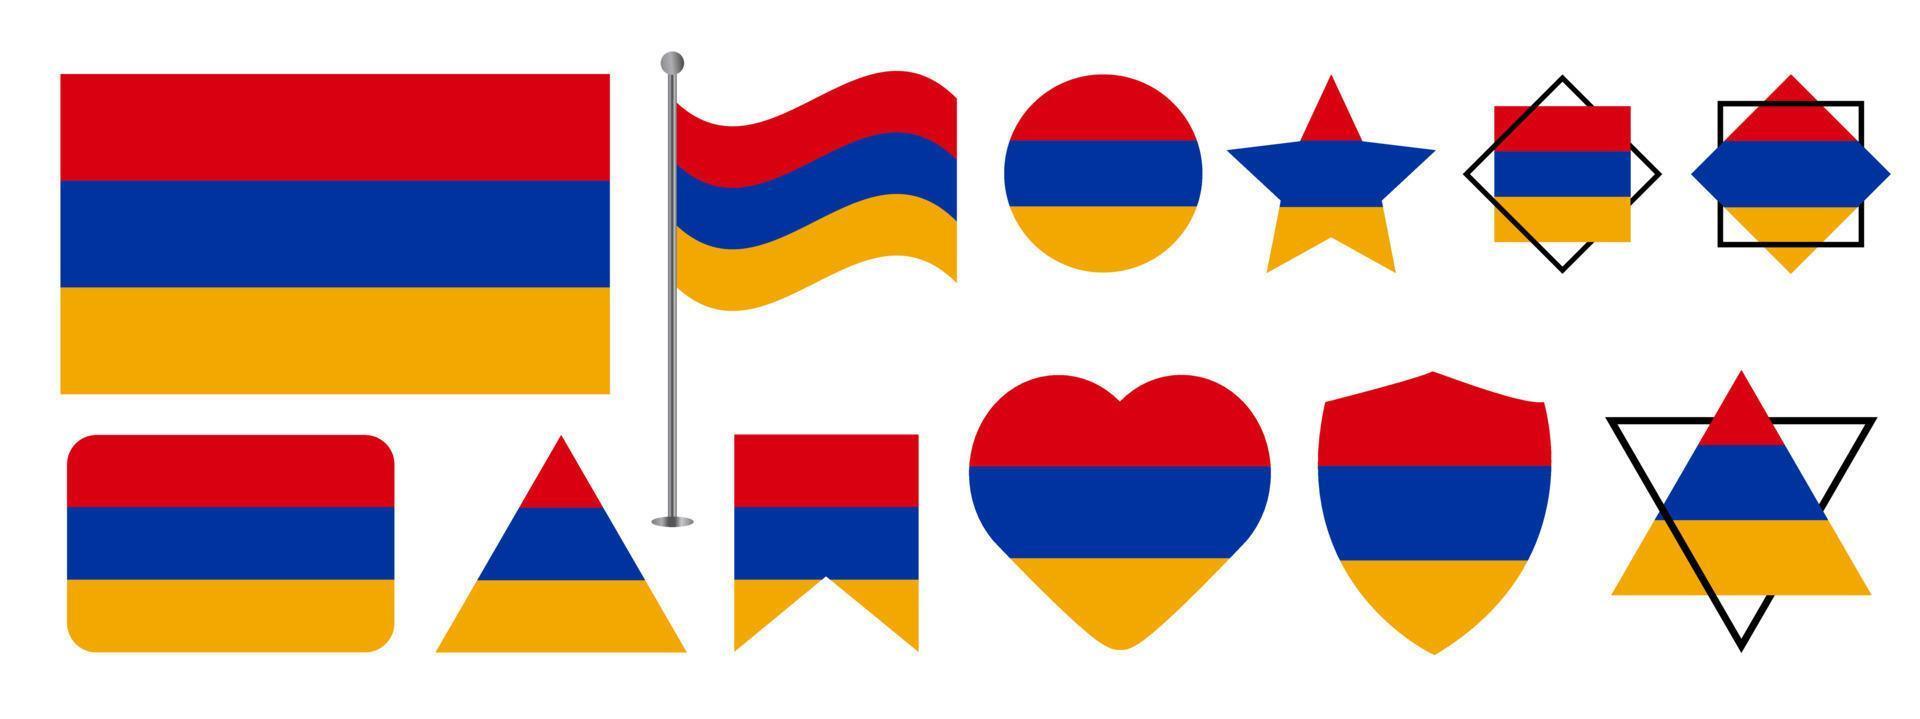 design della bandiera dell'armenia. insieme di progettazione di vettore della bandiera nazionale dell'armenia. illustrazione vettoriale bandiera armena